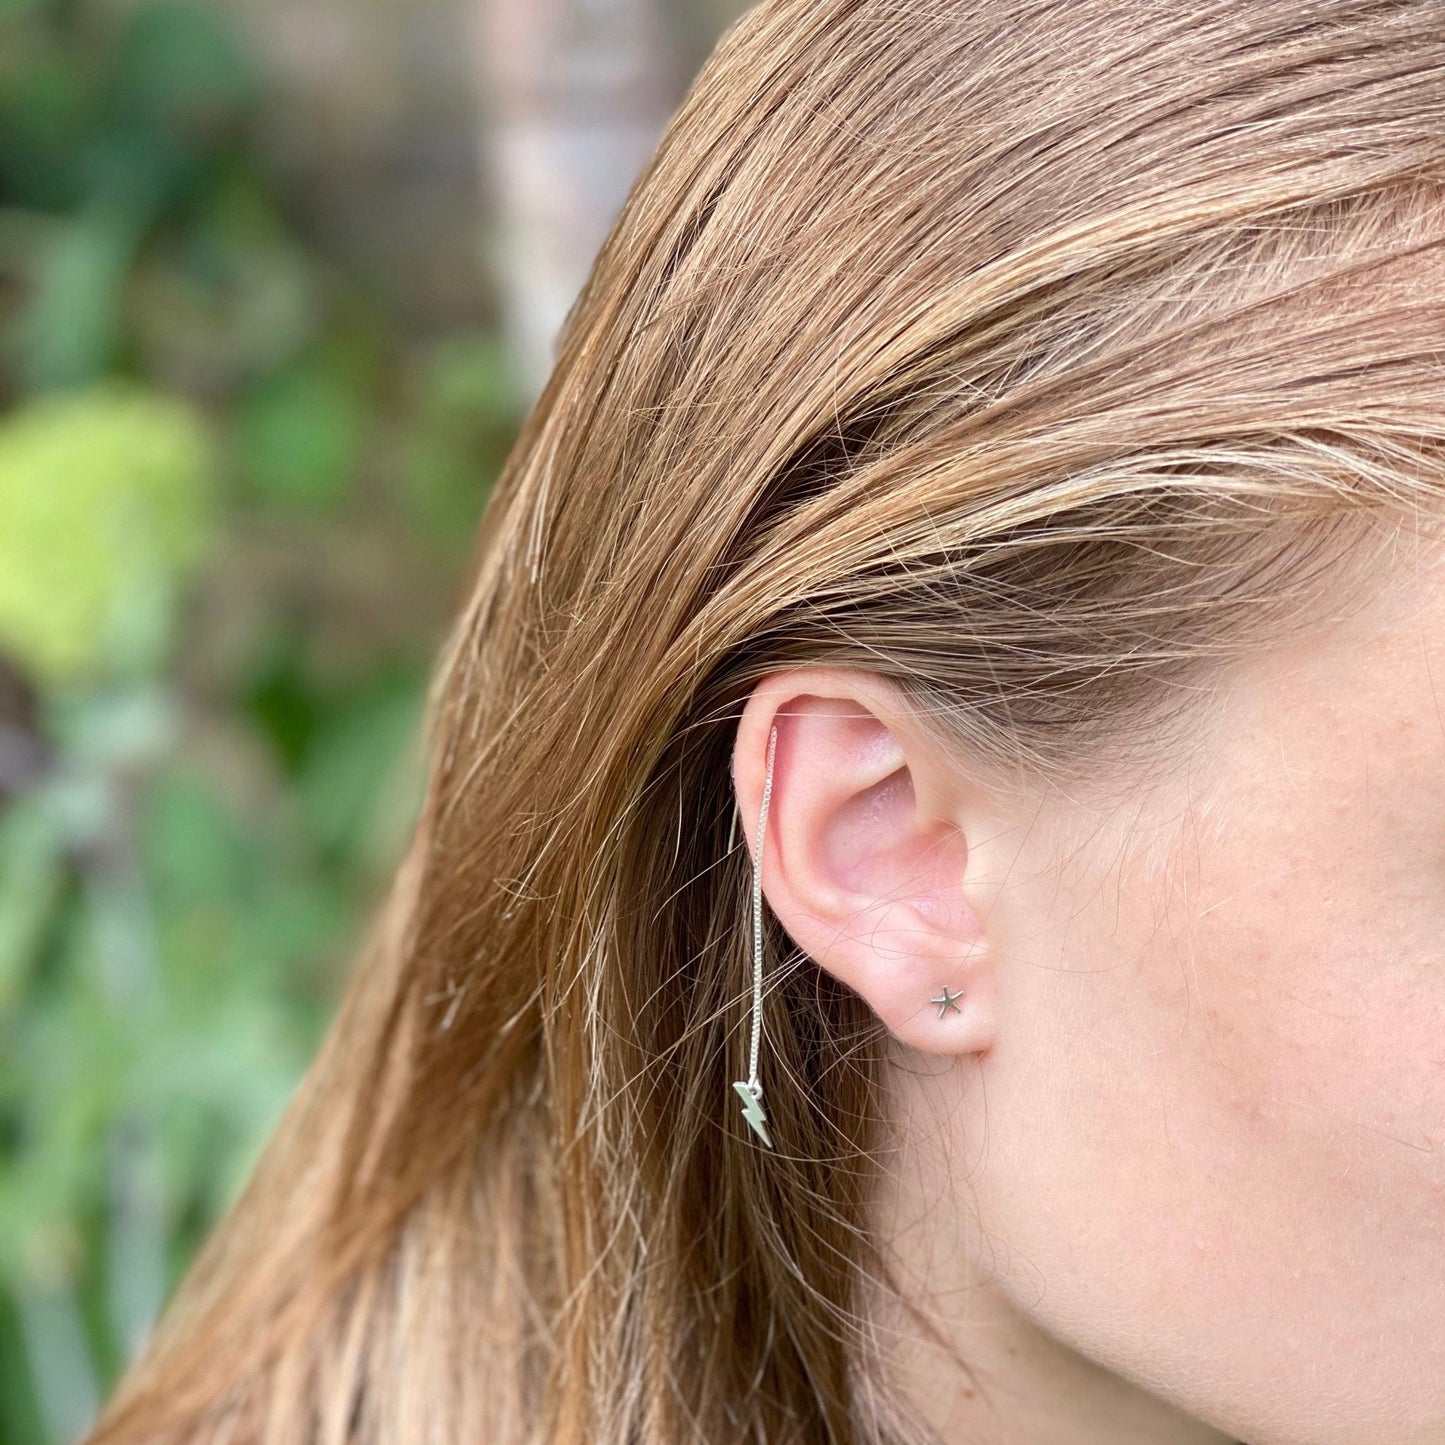 Asterisk Earring in Sterling Silver (single earring) - Mazi New York-jewelry